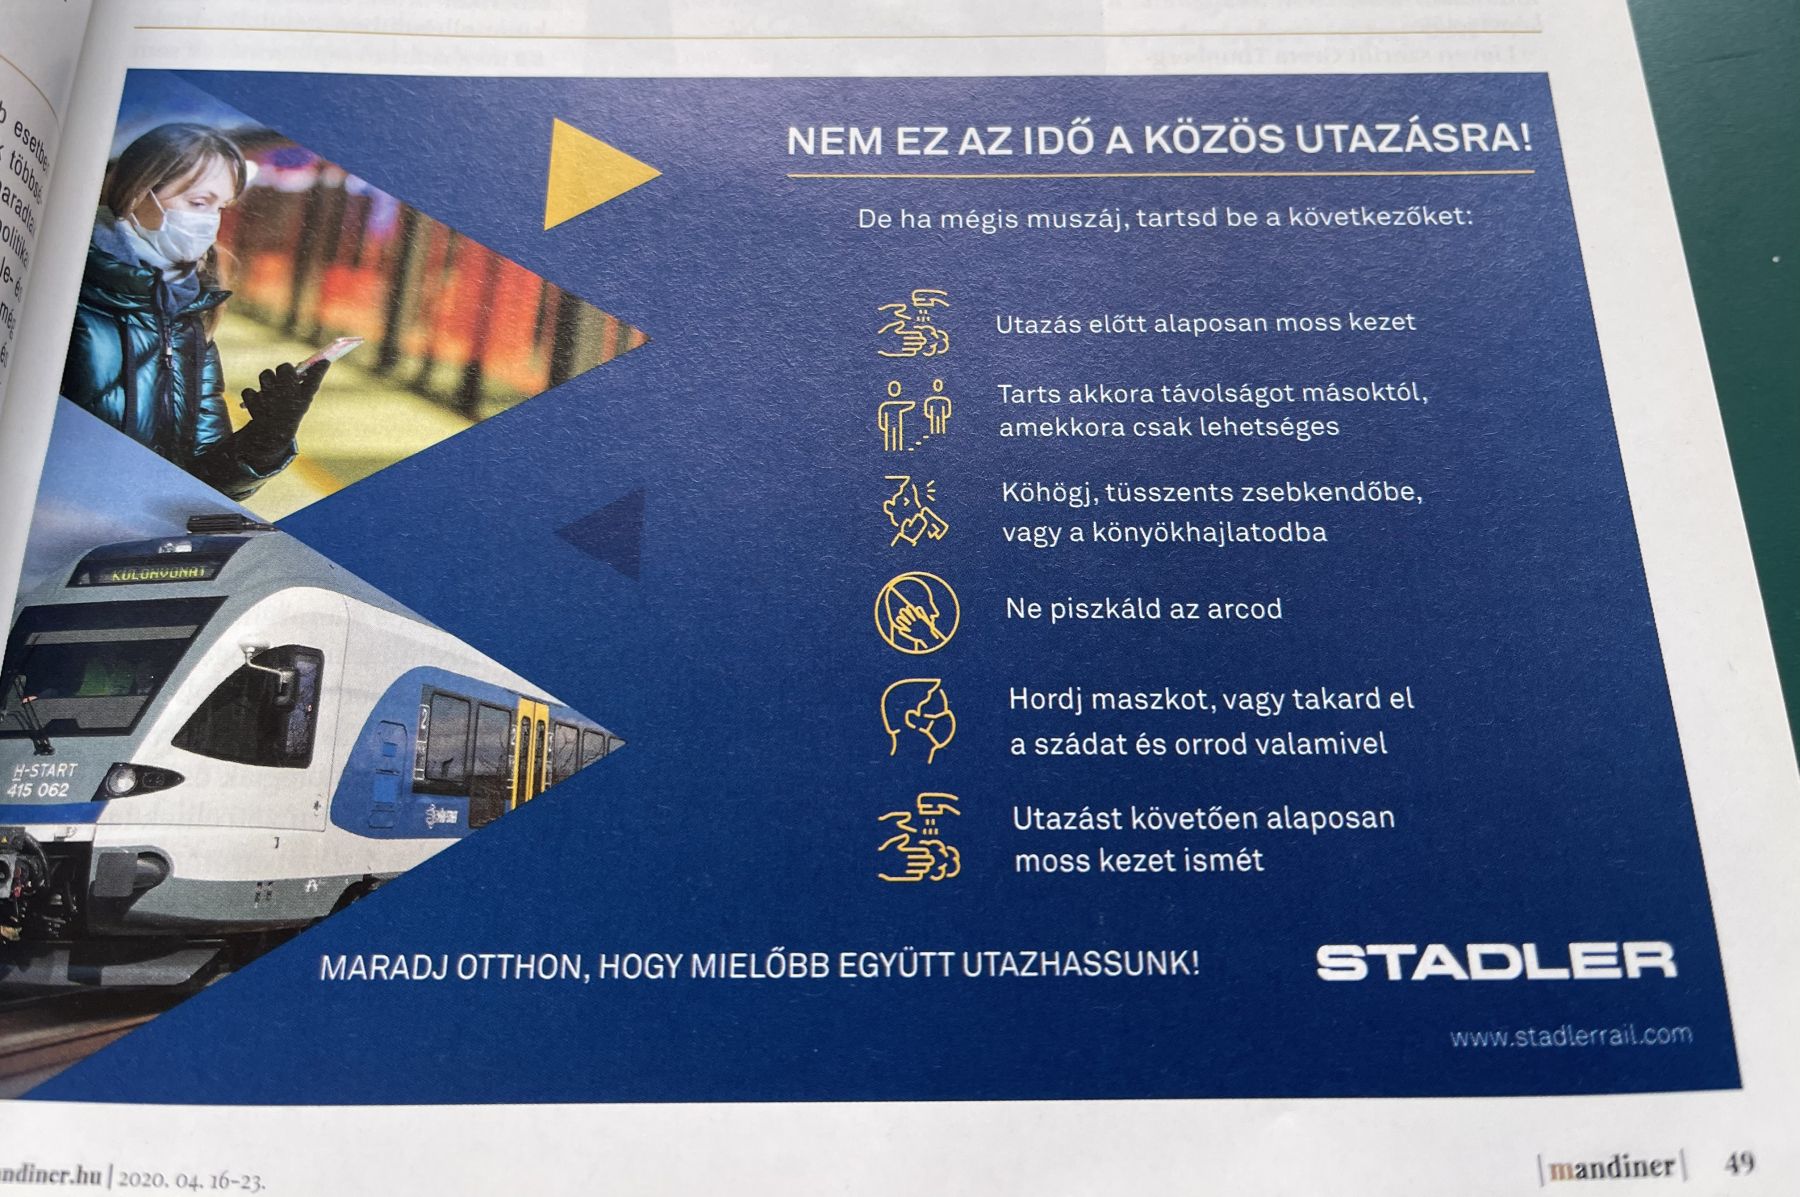 Hogyan támogatja a Stadler Rail Orbán Viktor rendszerét?